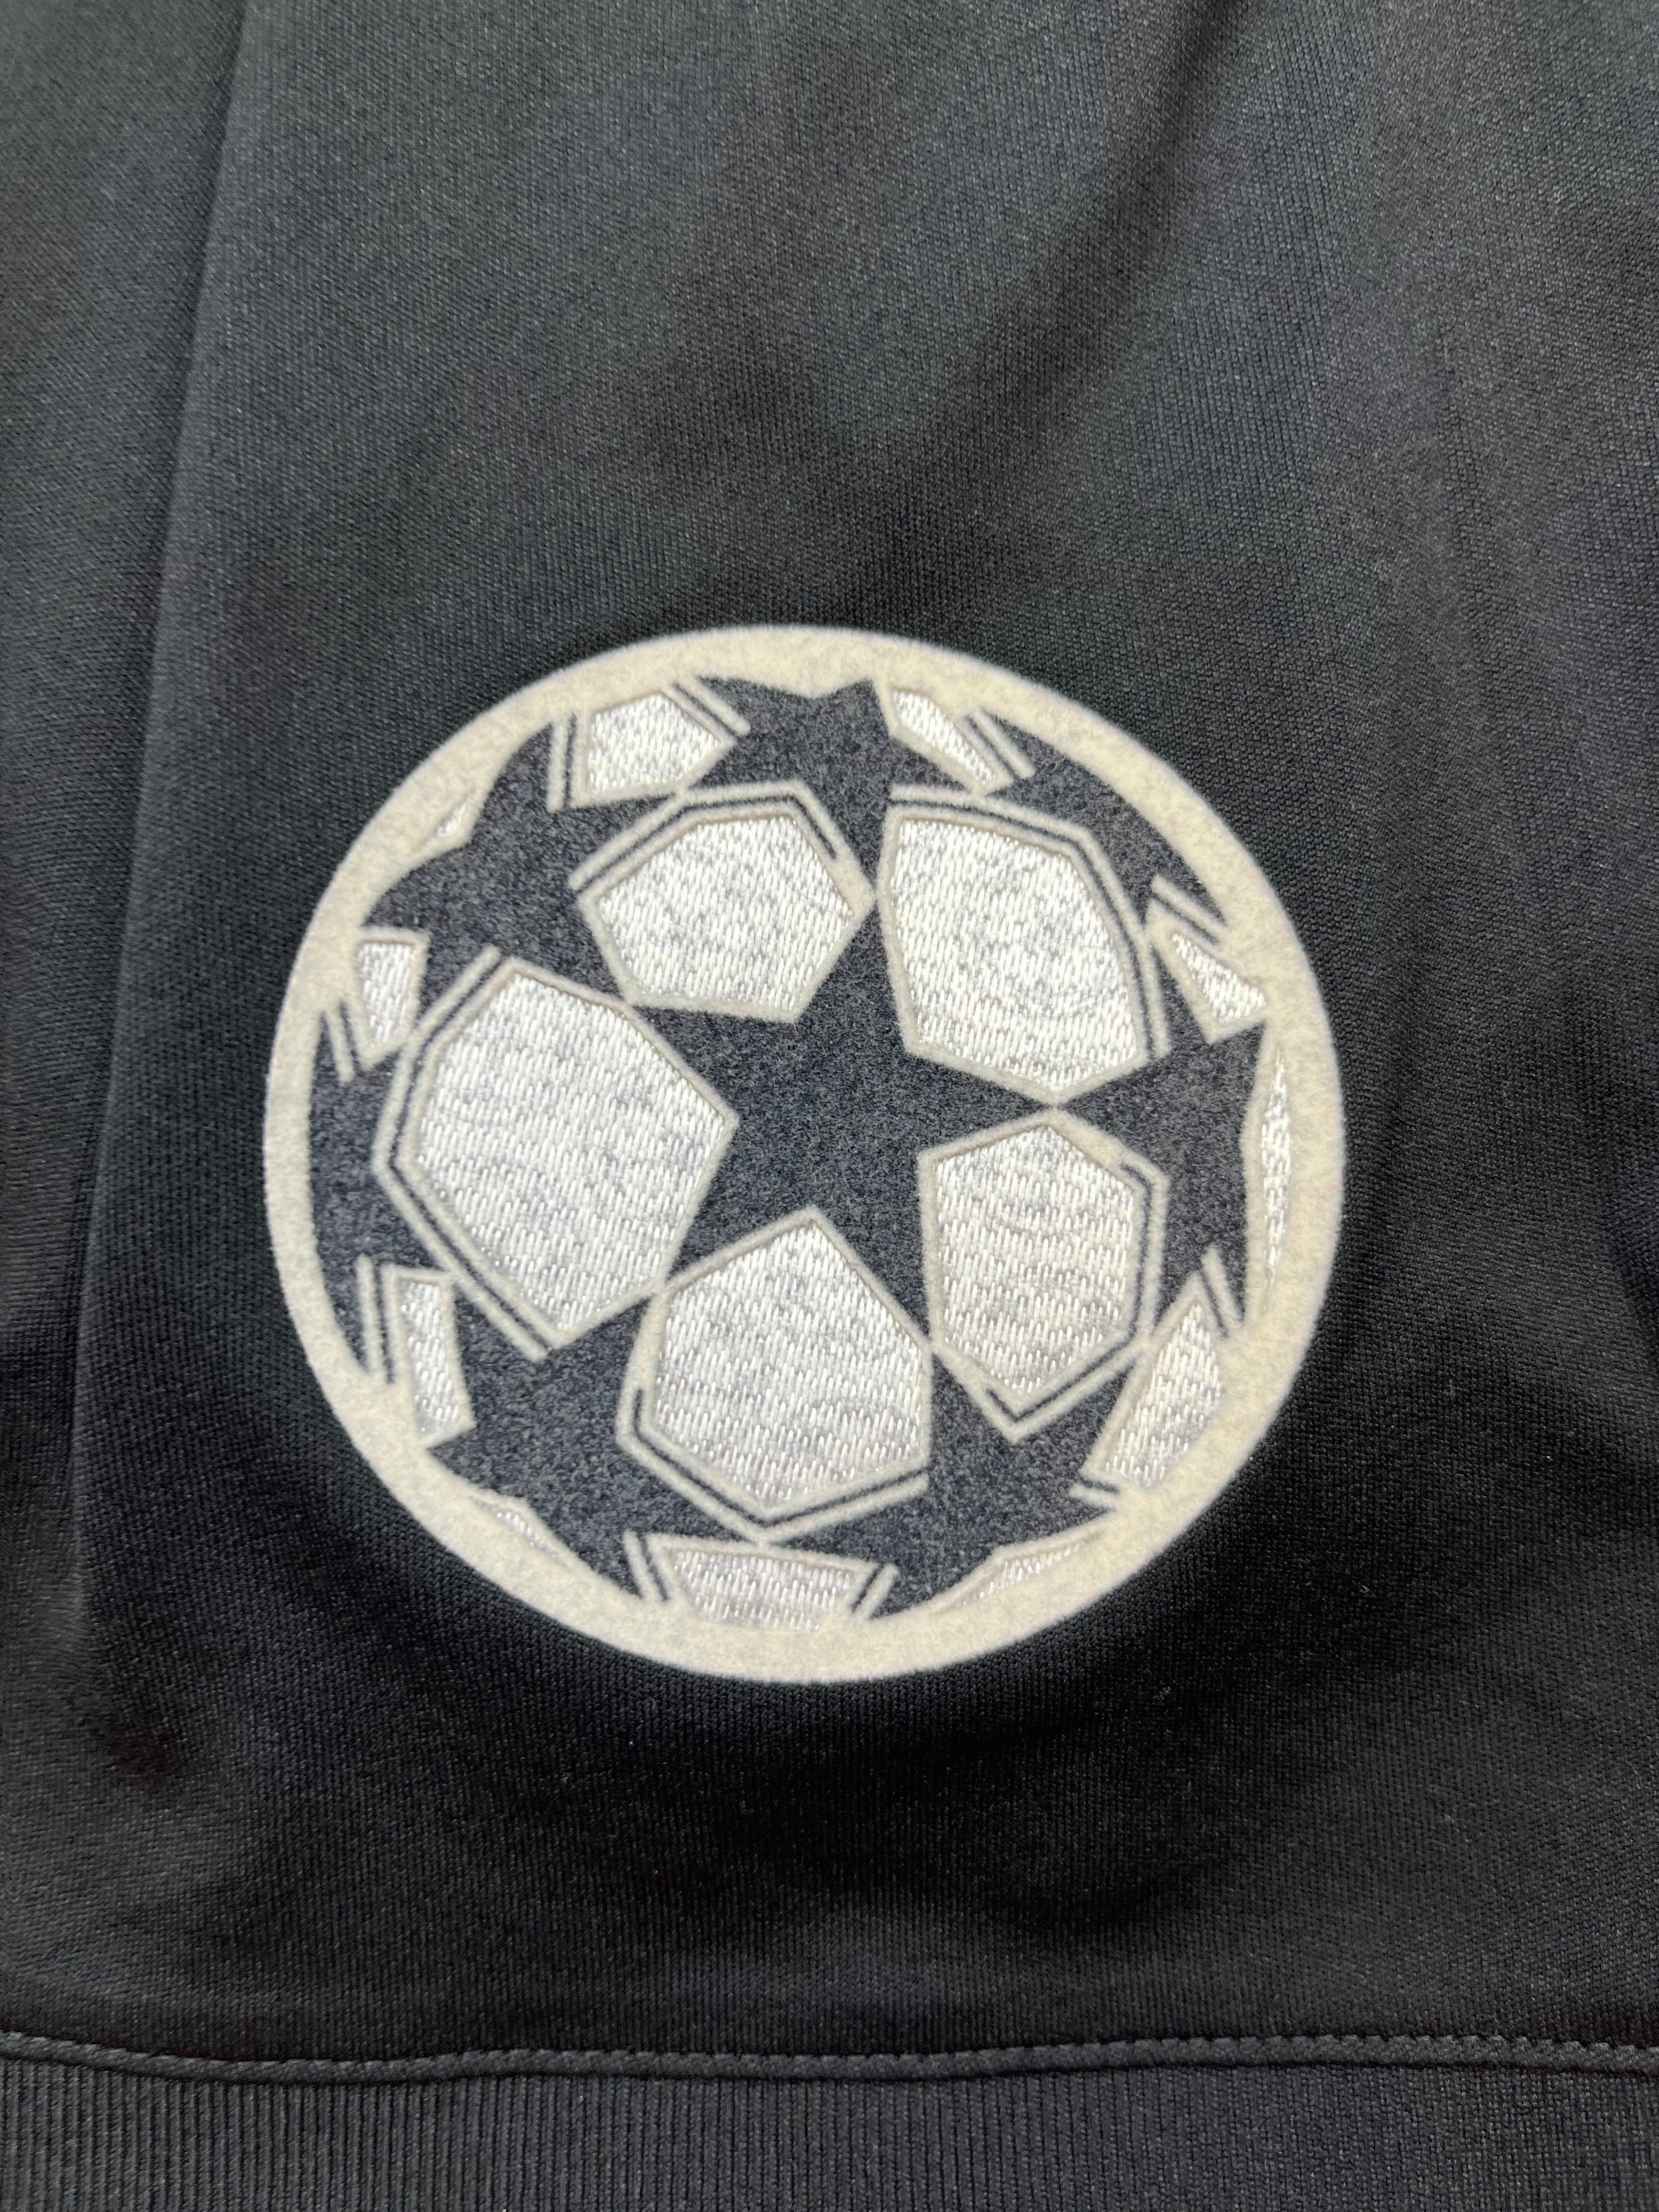 2019/20 Juventus Home Shirt (L) 9/10